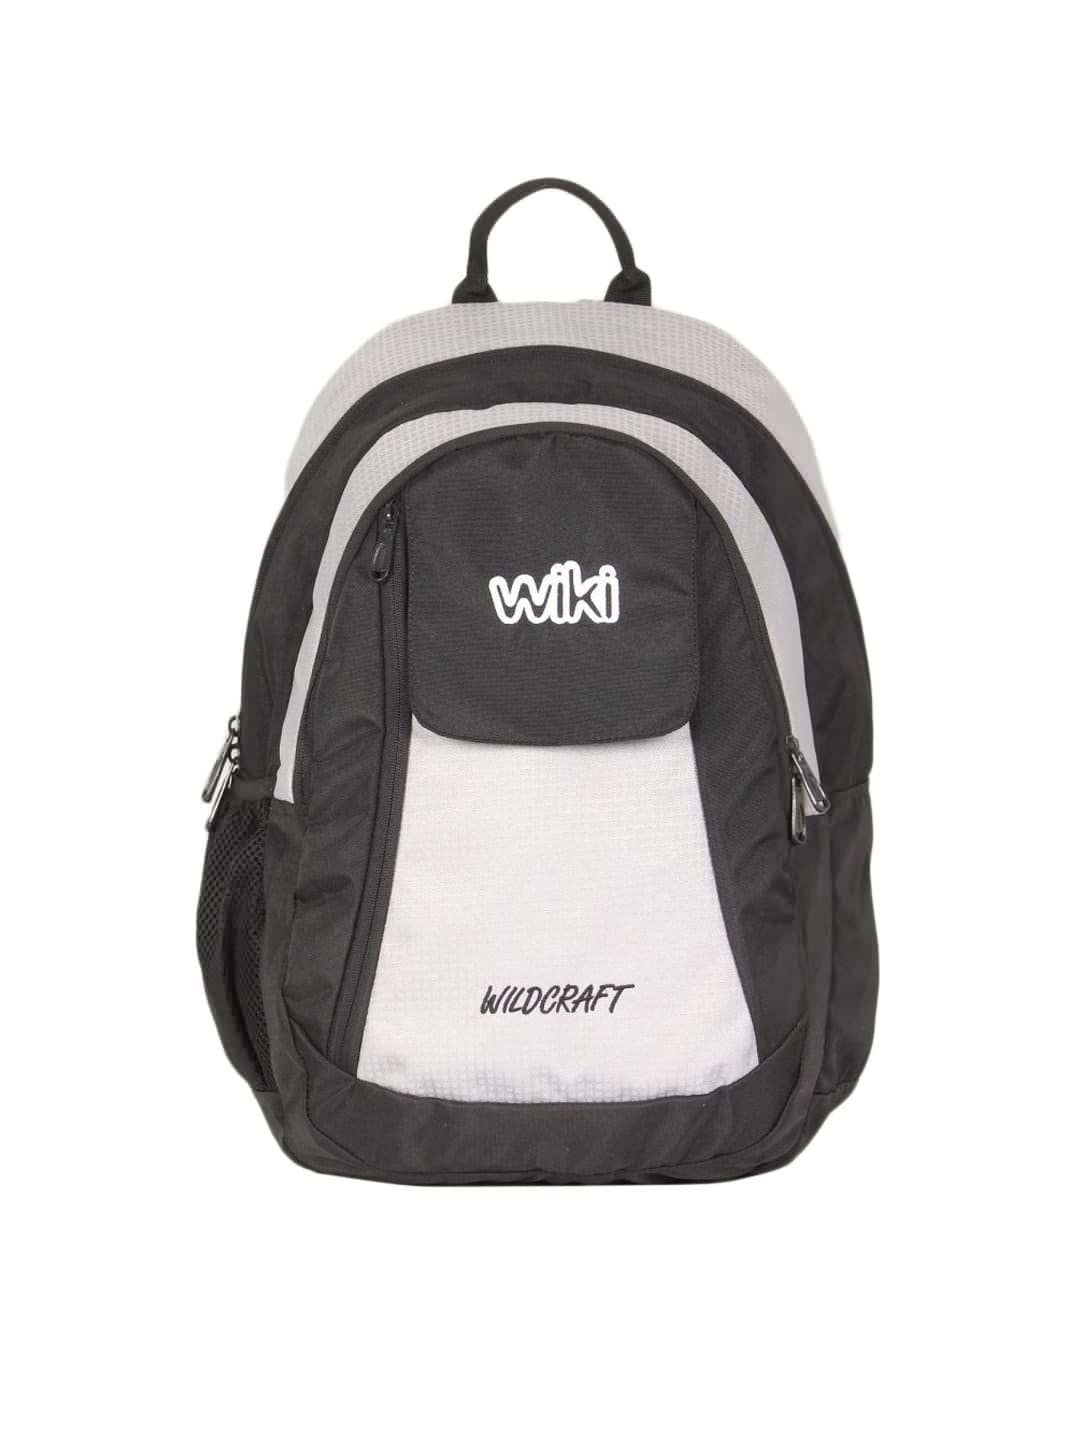 Wildcraft Unisex Schoolbag Grey Backpack